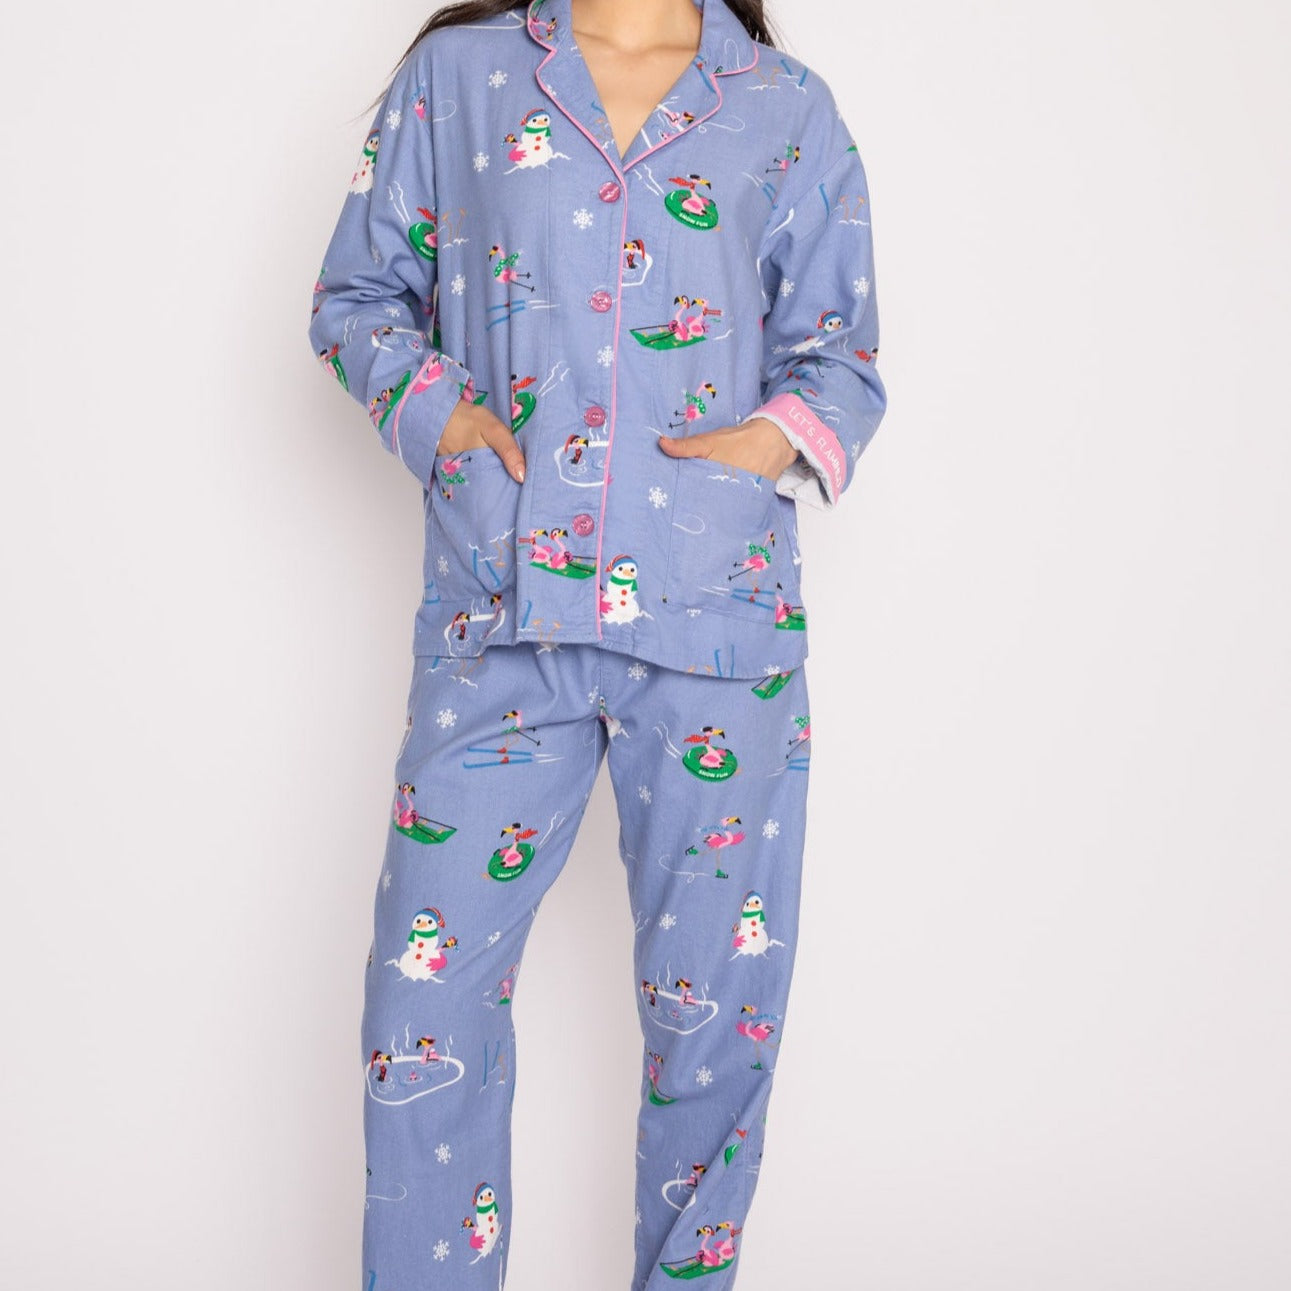 Flannel Pajama Sets - RKFLPJ Sleep & Lounge - Sleep - Pajamas P.J. Salvage   